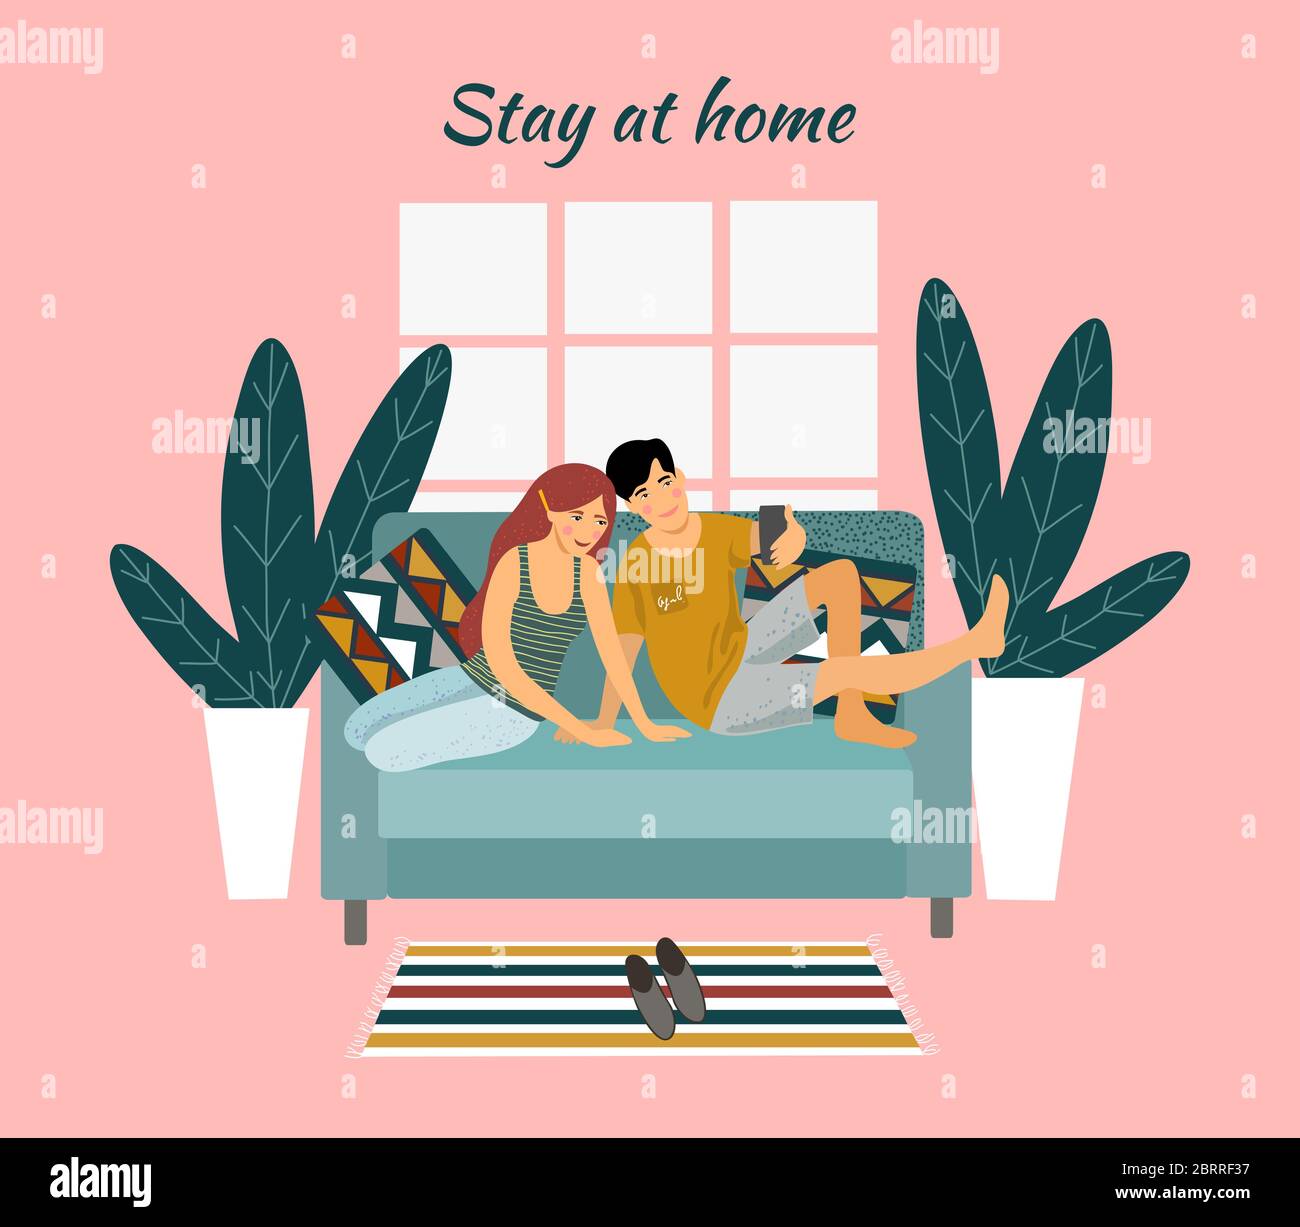 Bleib zu Hause. Ein junges Paar, das auf einem Sofa sitzt und Selfies auf einem rosa Hintergrund macht. Vektor flache Abbildung. Stock Vektor